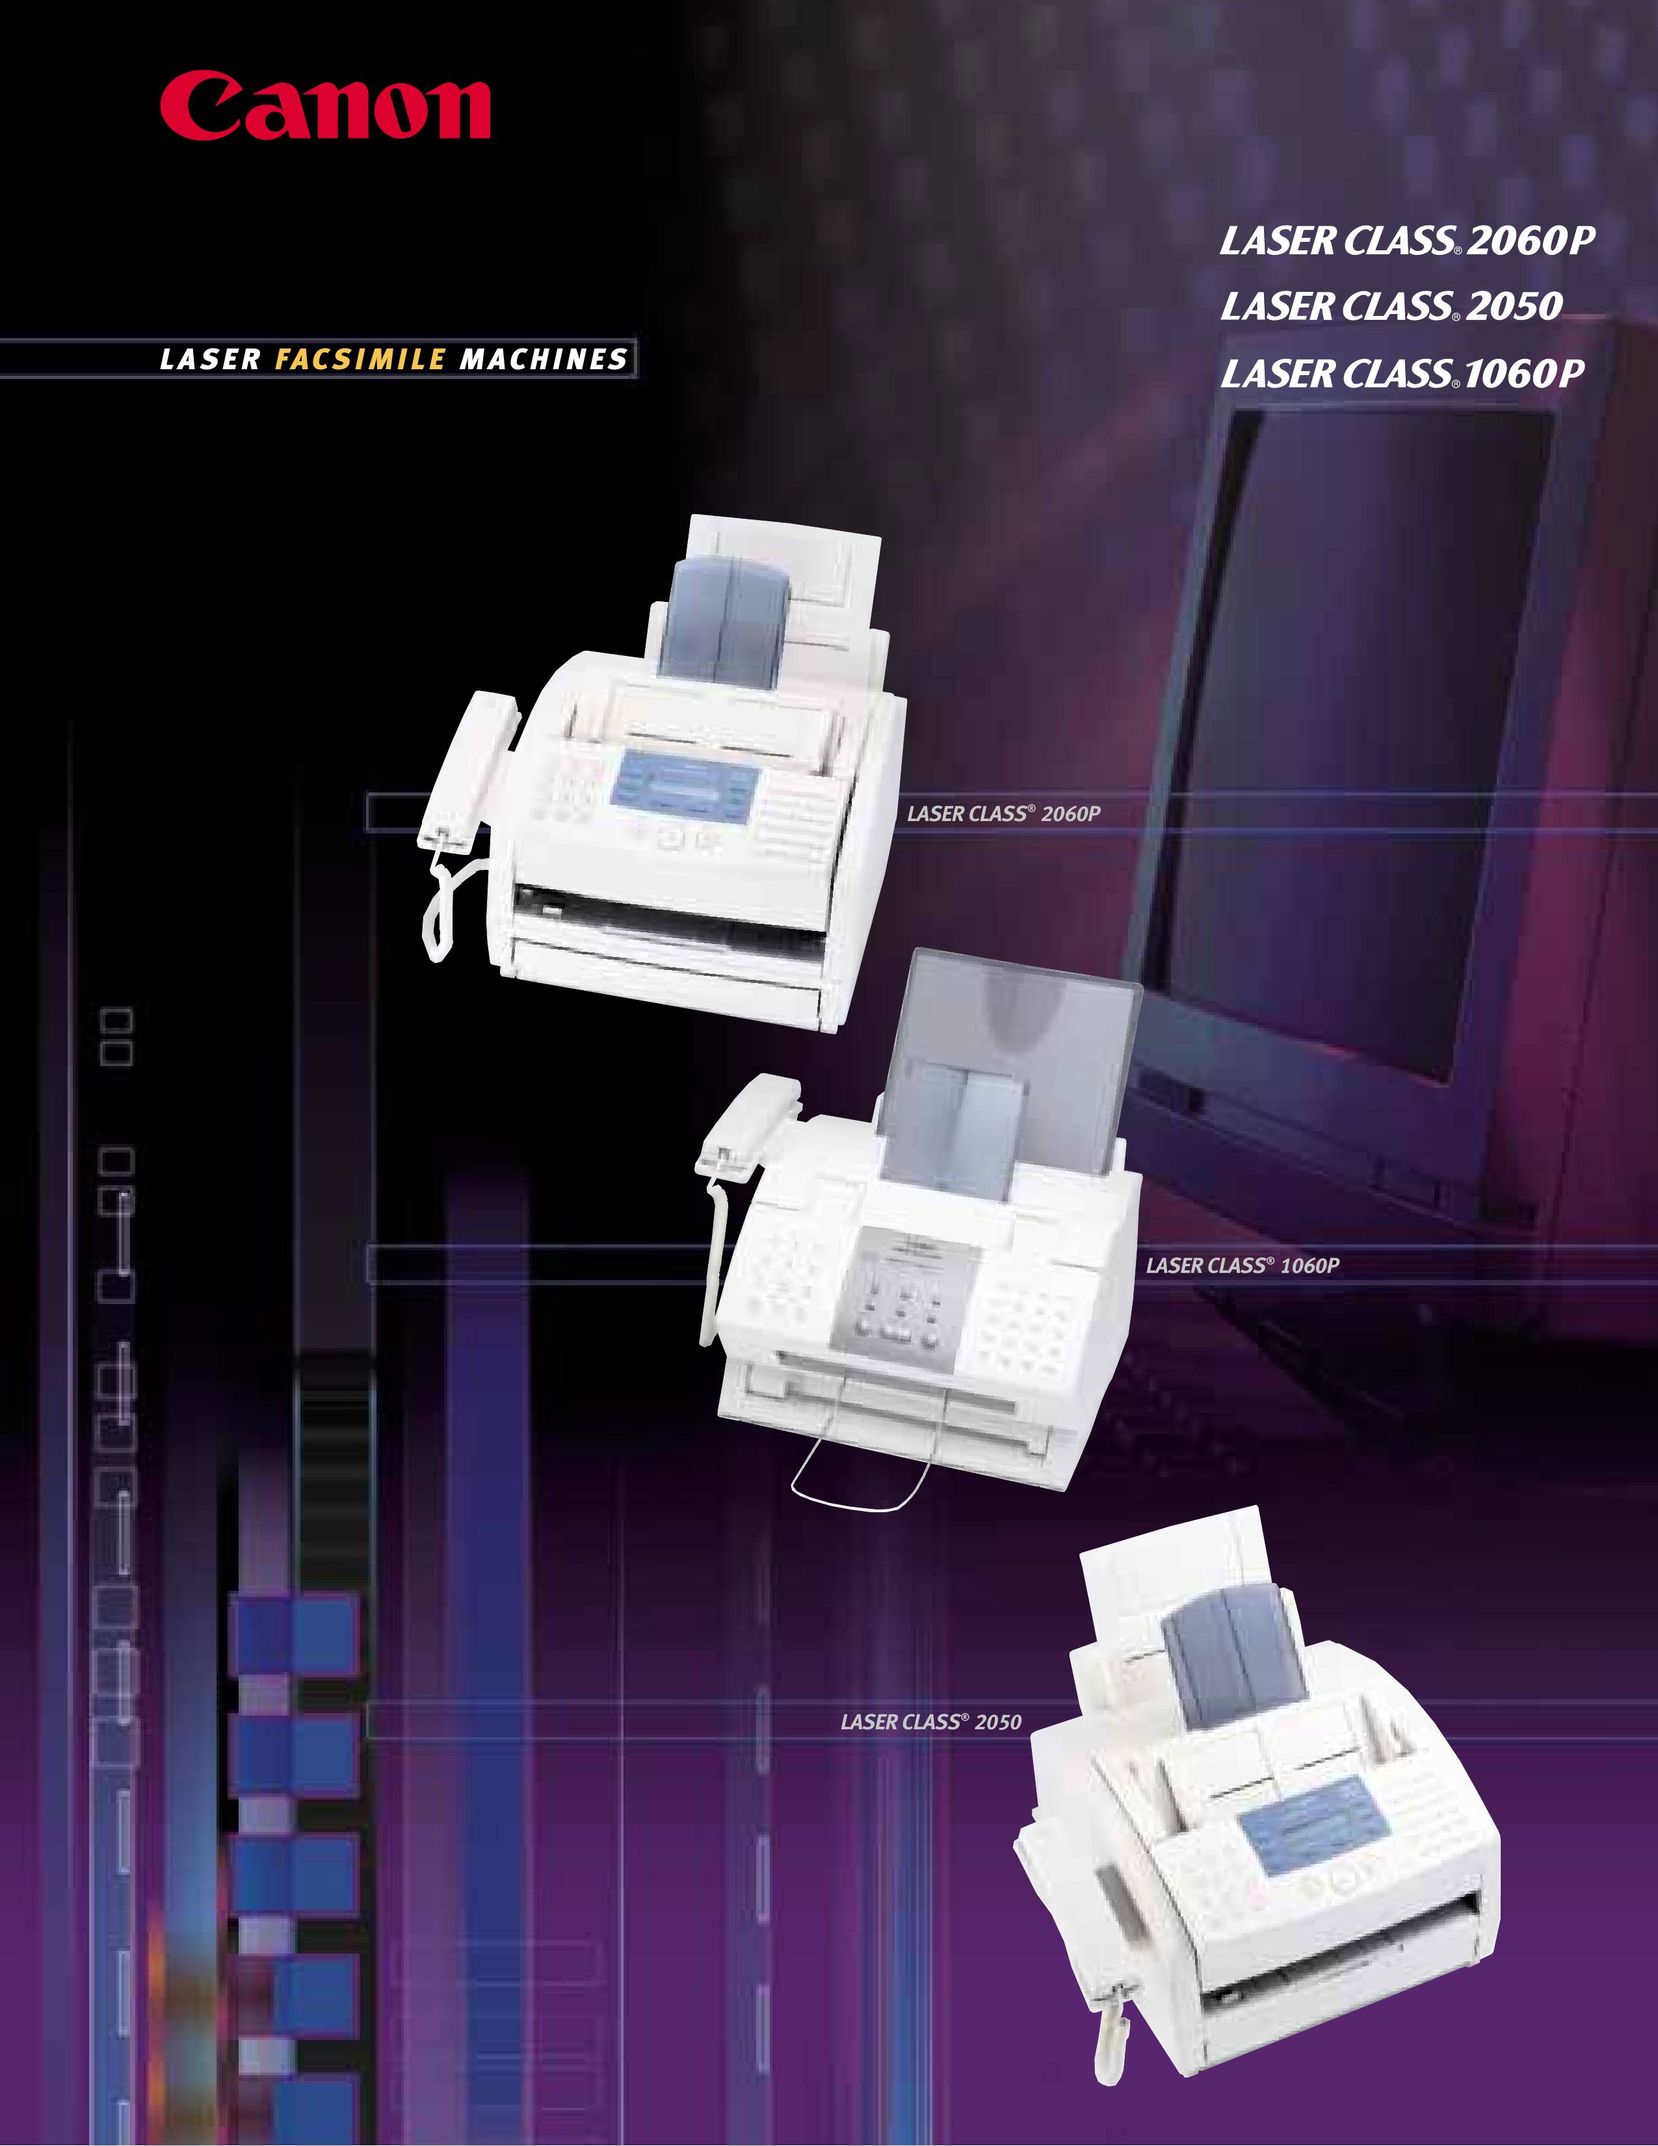 Canon 1060P Fax Machine User Manual